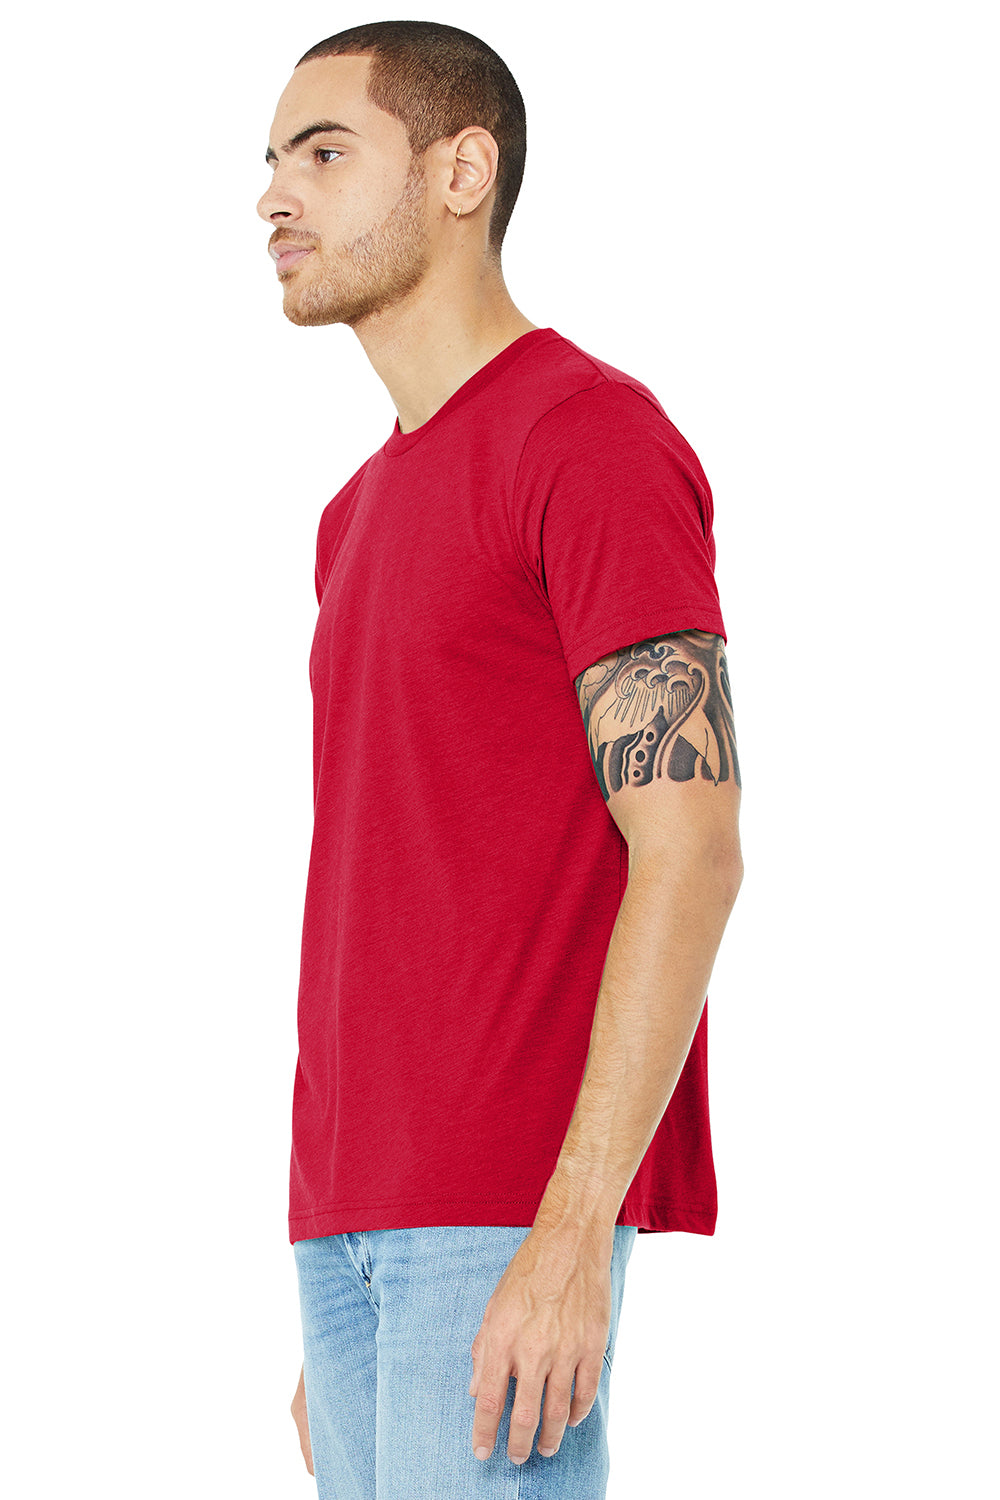 Bella + Canvas BC3413/3413C/3413 Mens Short Sleeve Crewneck T-Shirt Solid Red Model 3Q